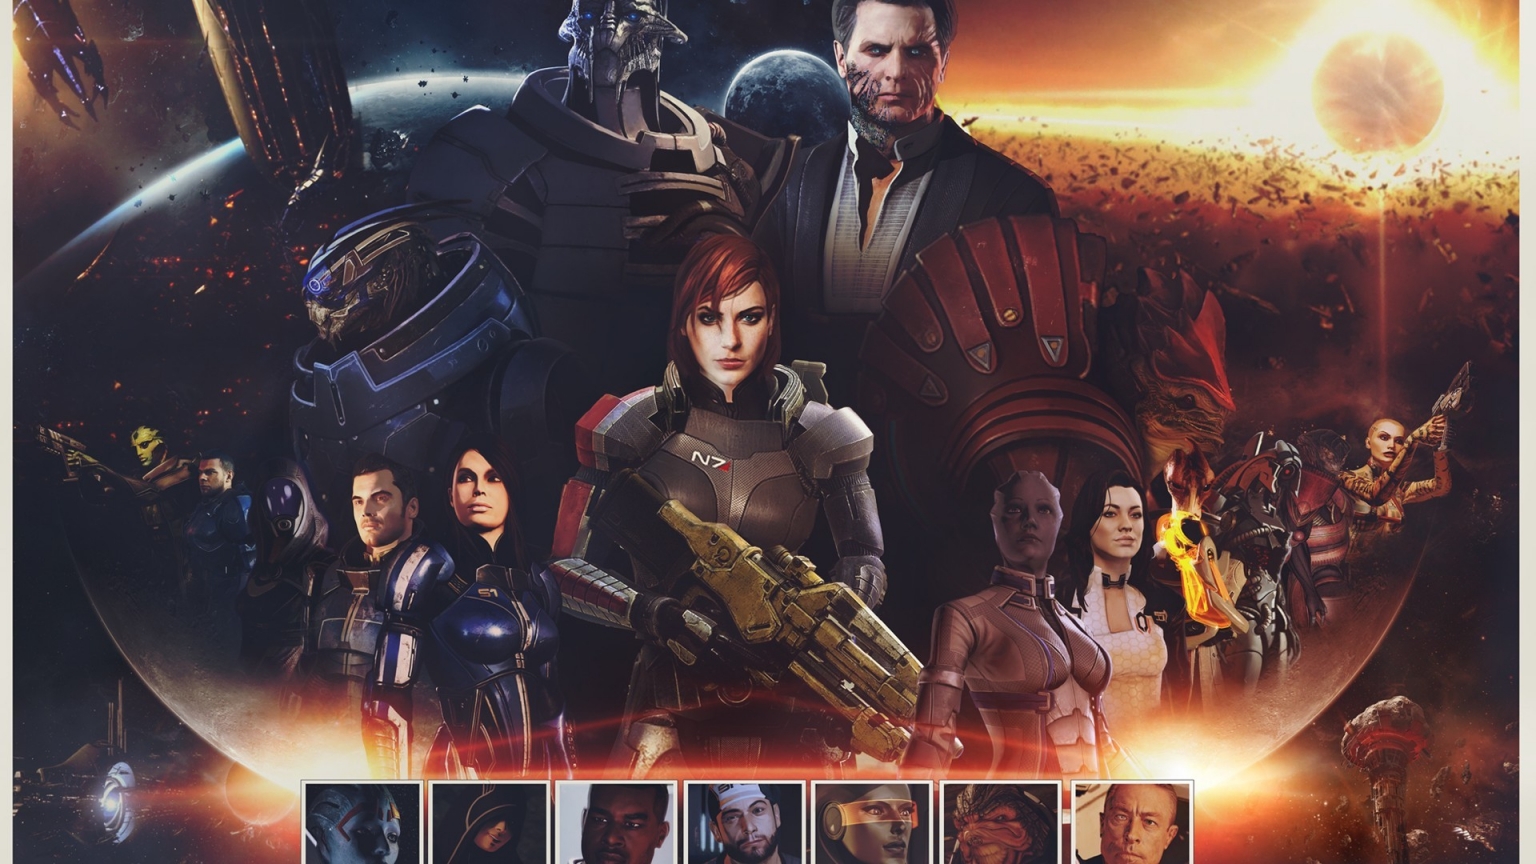 Mass Effect Zaeed Massani for 1536 x 864 HDTV resolution